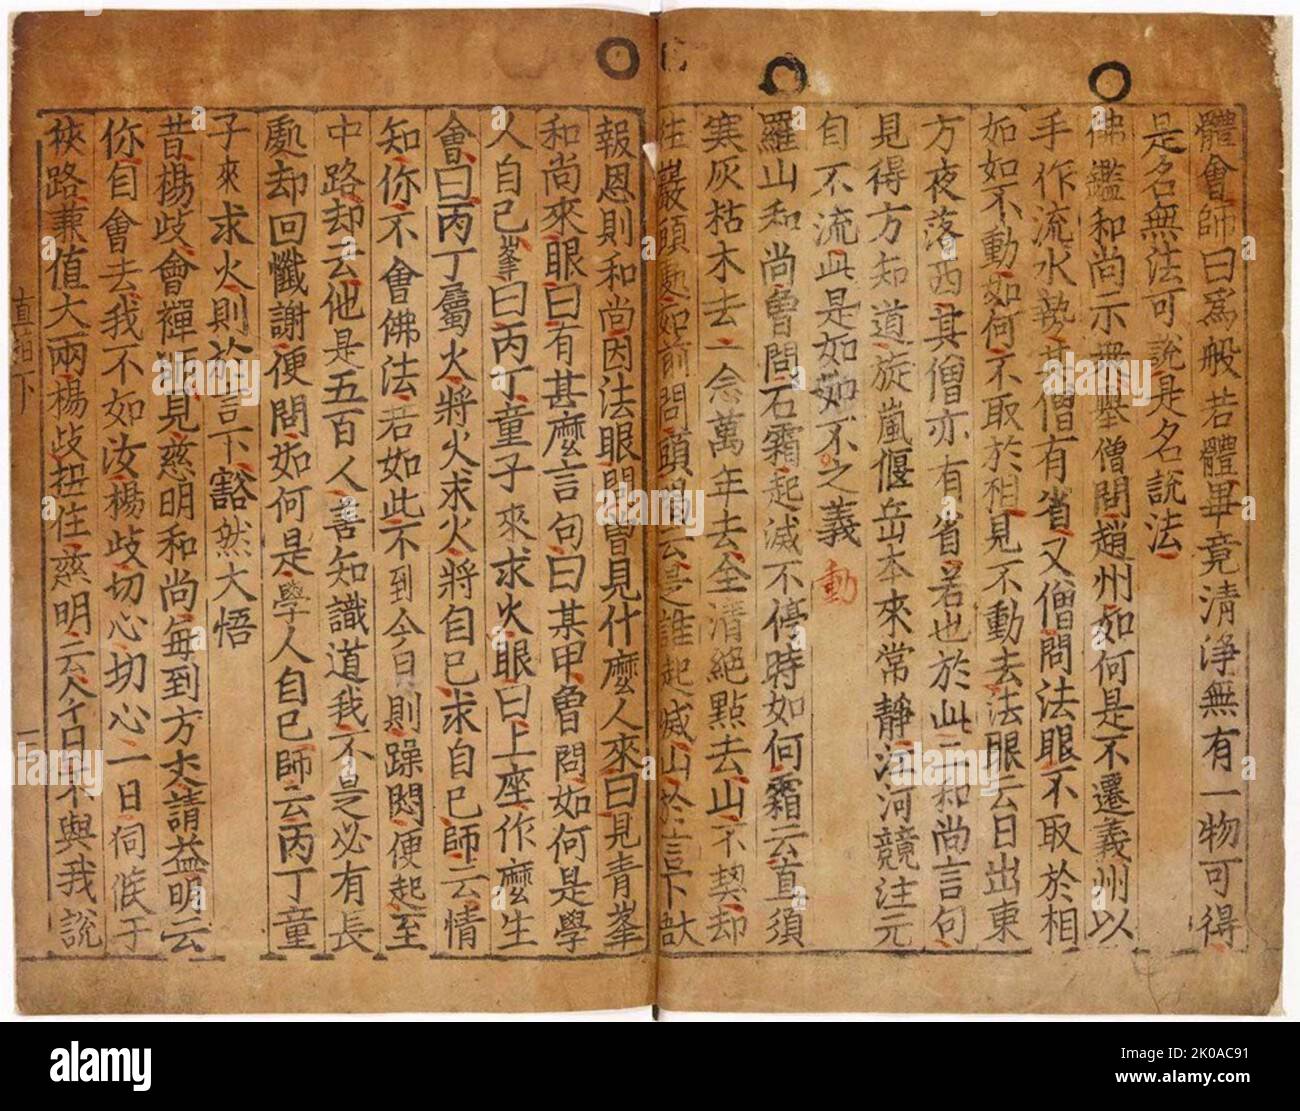 Jikji, ausgewählte Lehren buddhistischer Weisen und Seon-Meister, das früheste bekannte Buch, gedruckt mit beweglichem Metalltyp. Gedruckt in Korea, 1377 Stockfoto